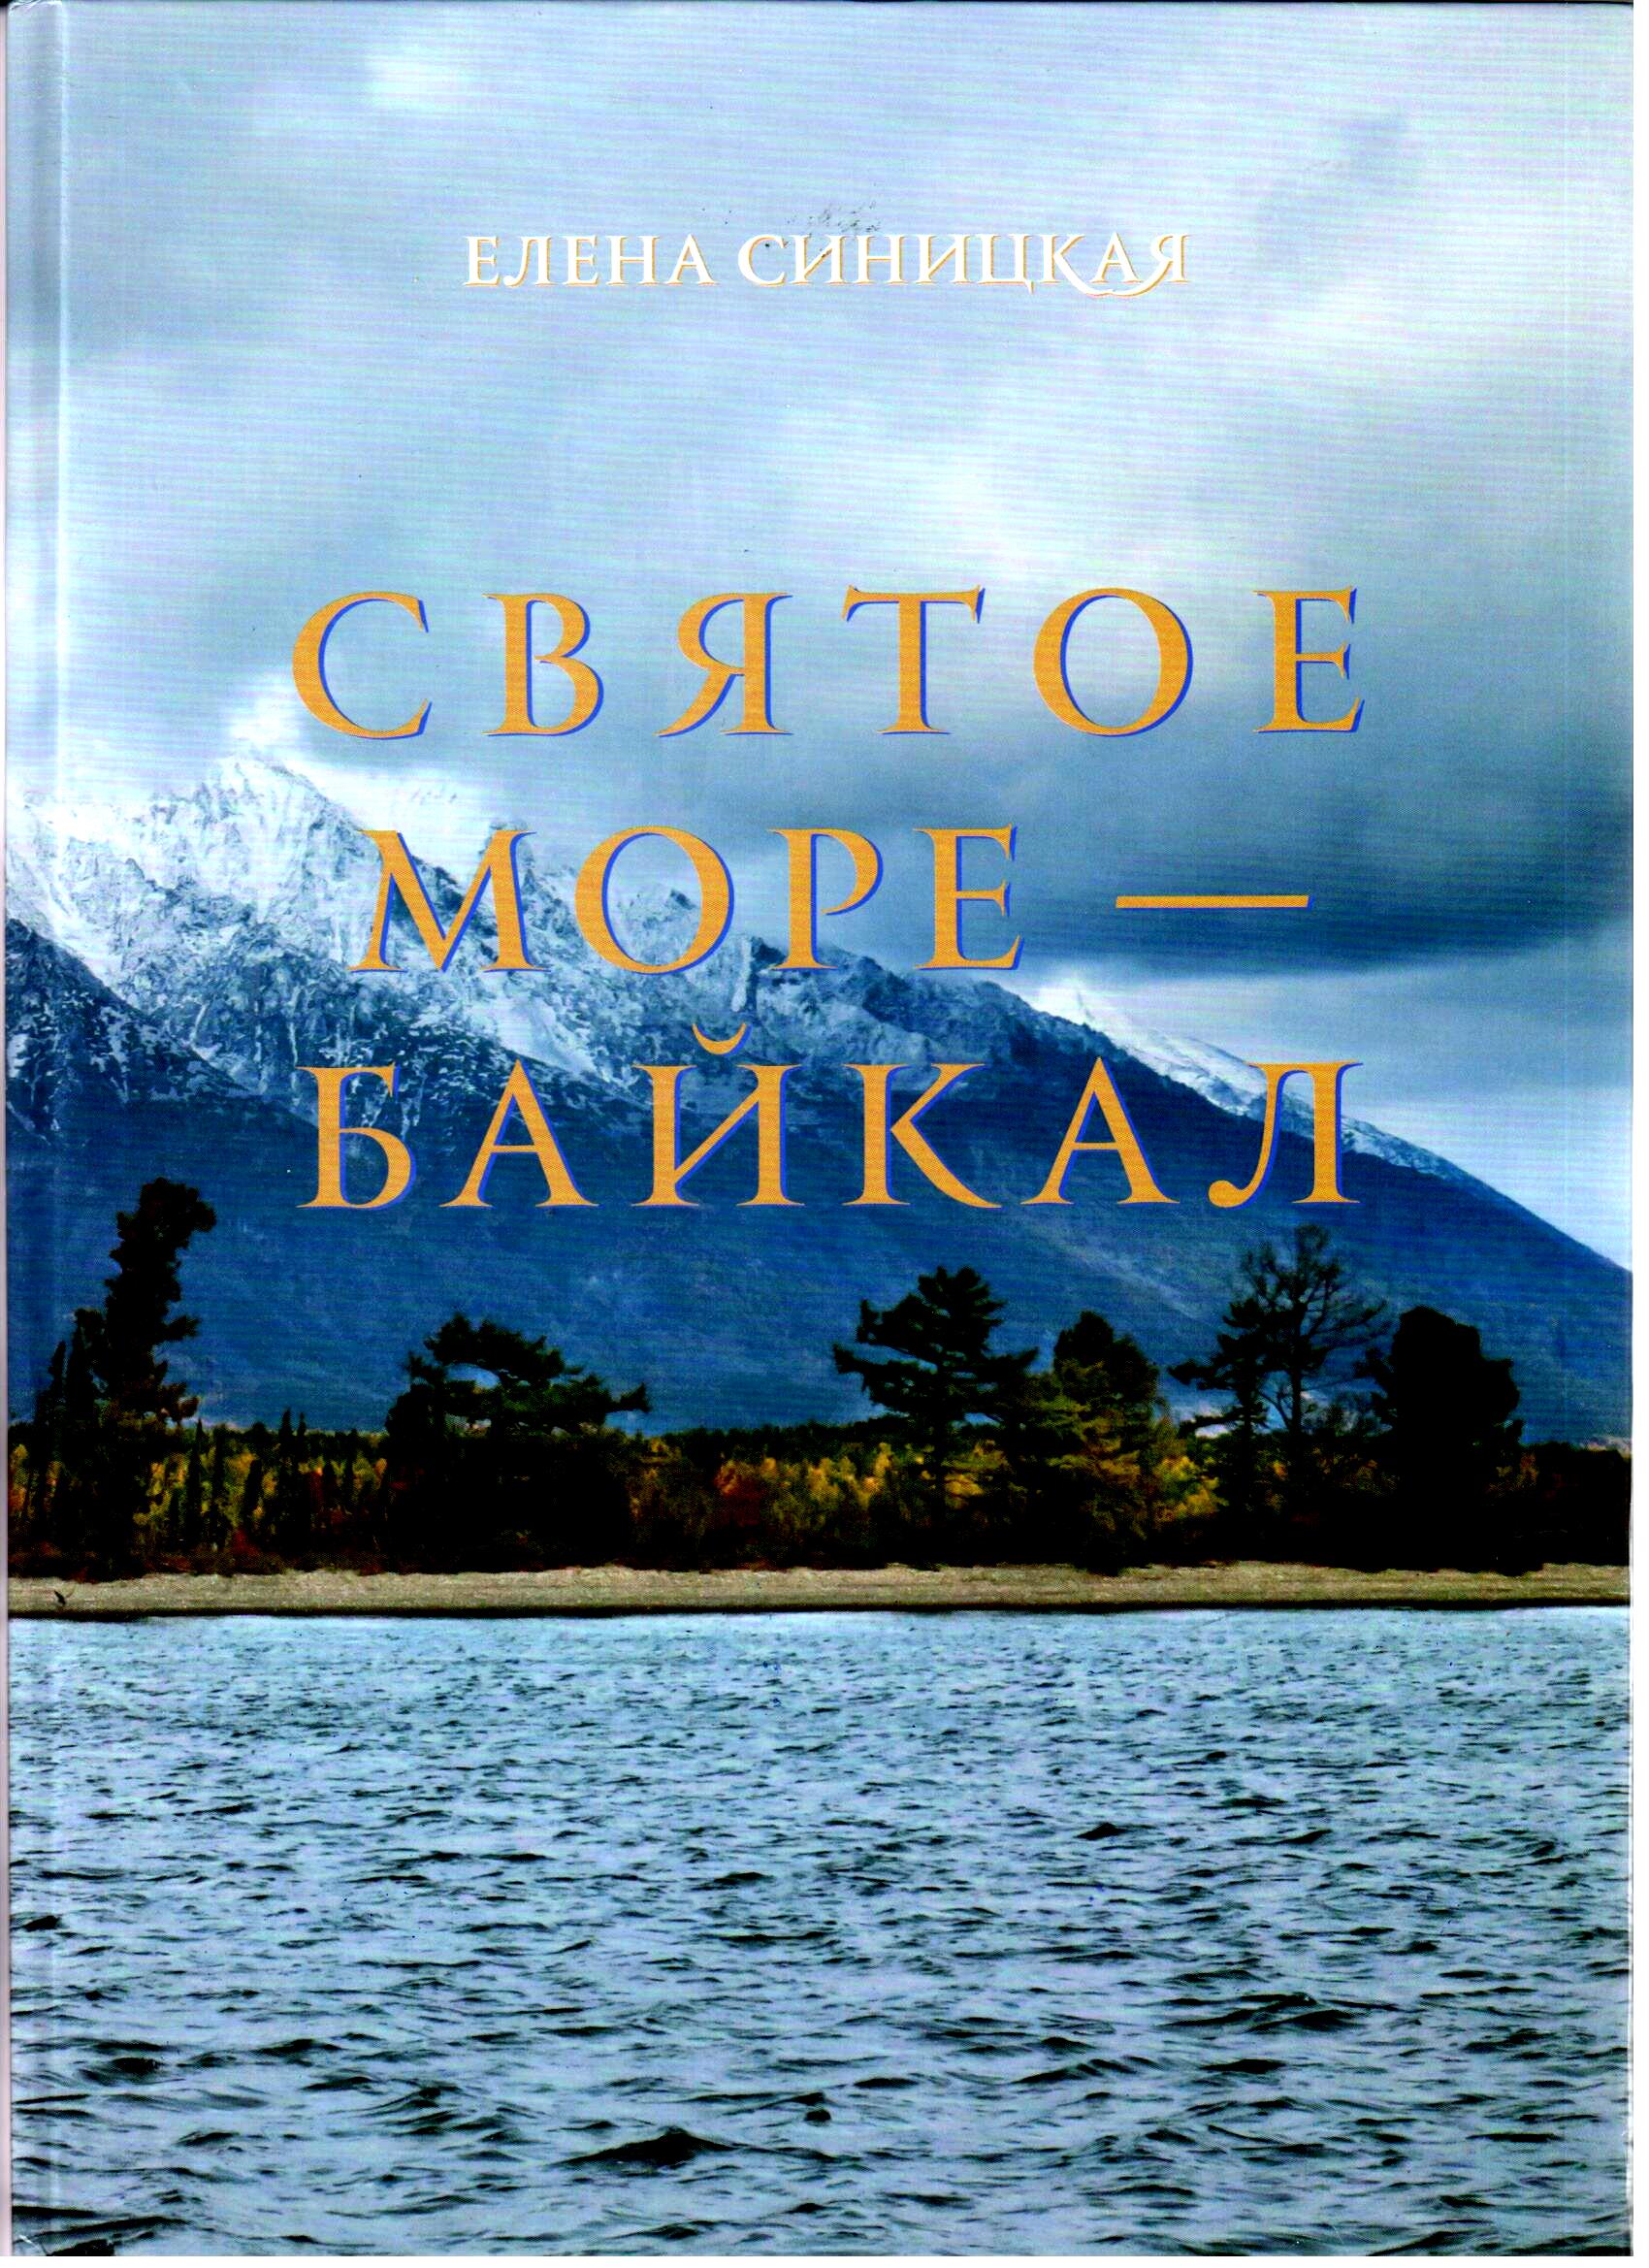 Святое море - Байкал